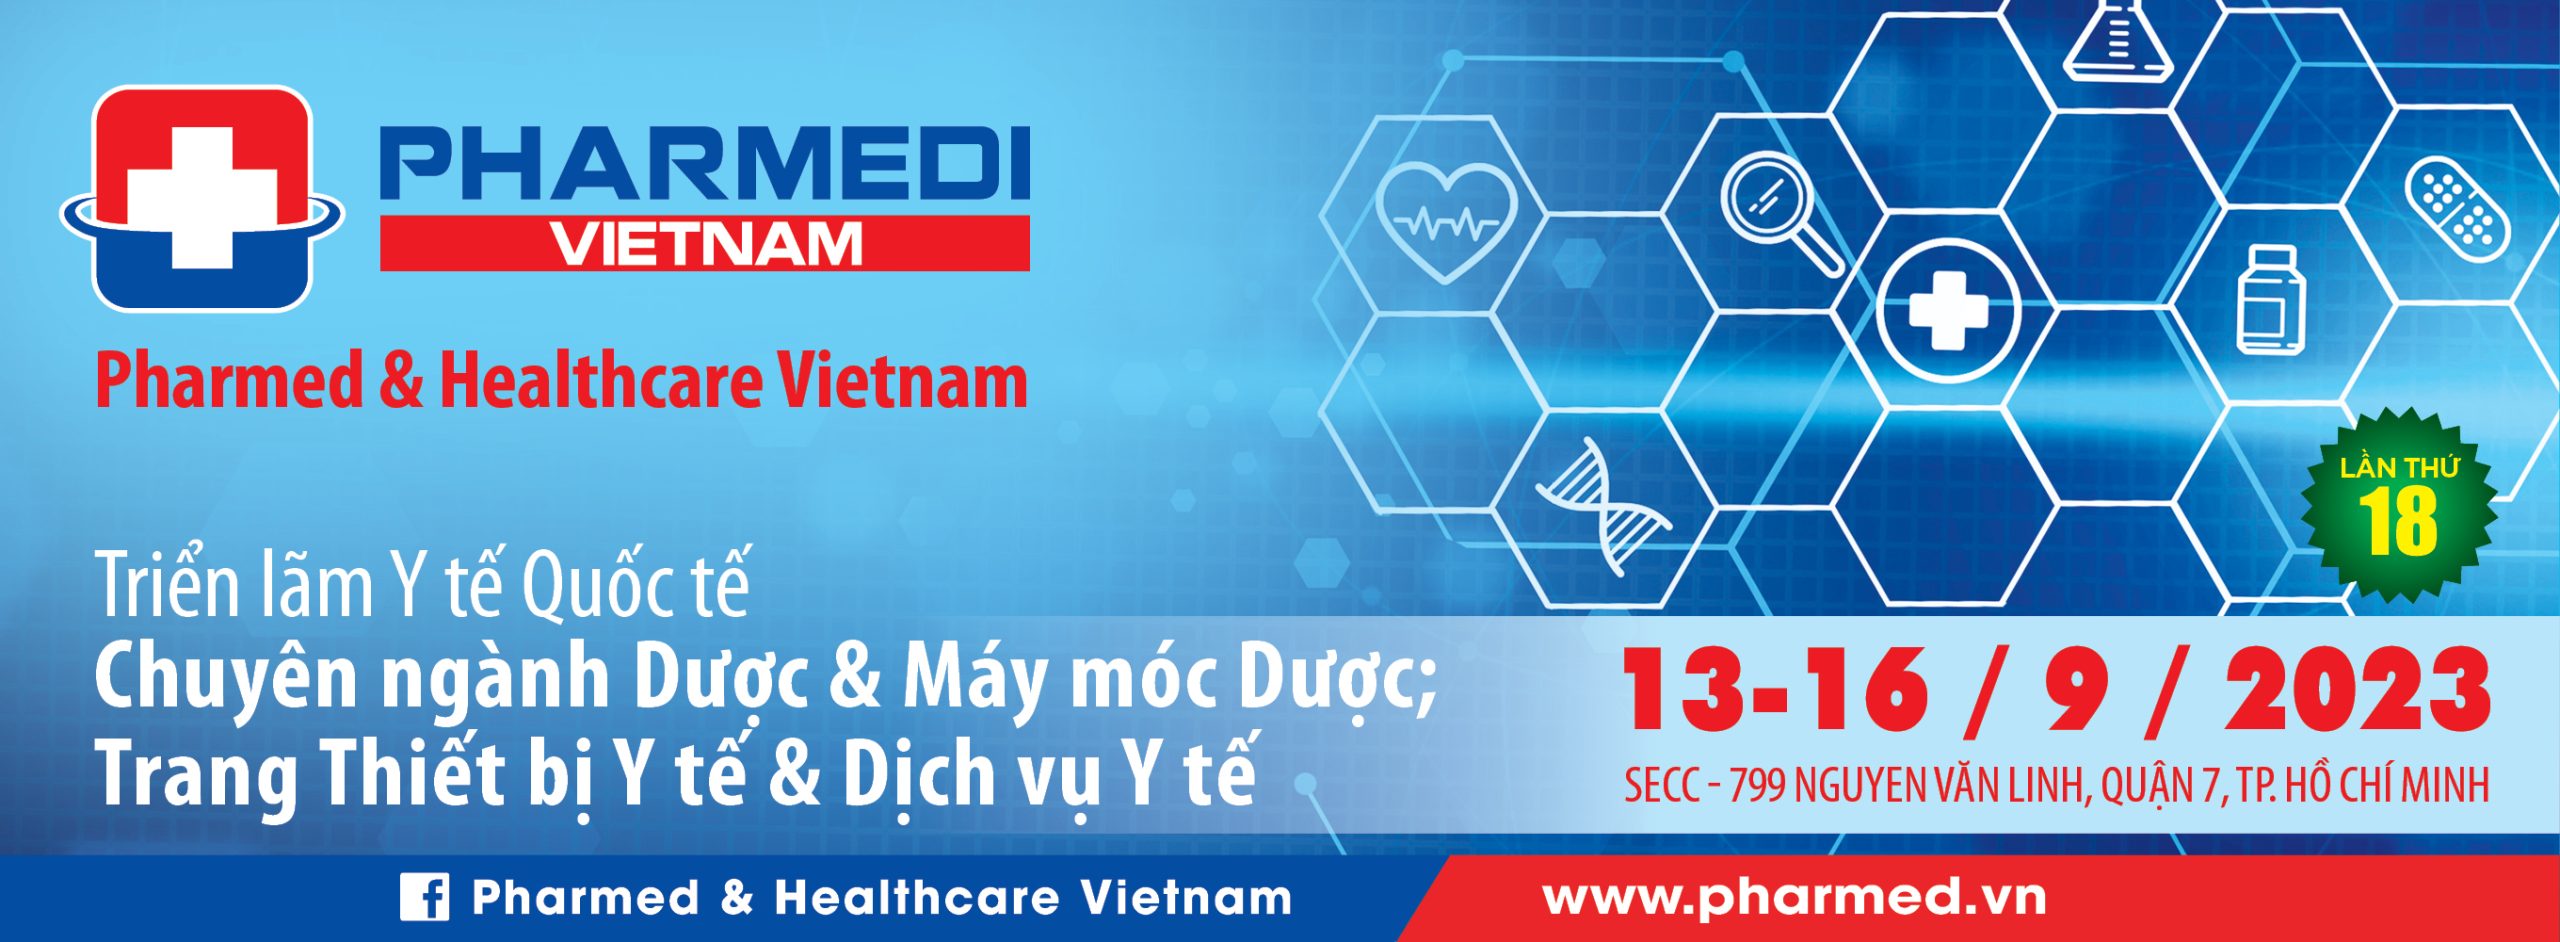 PHARMEDI VIETNAM 2023 - Triển Lãm Y Tế Quốc Tế chuyên ngành Dược, và Máy móc Dược; Trang thiết bị Y Tế và Dịch vụ Y Tế